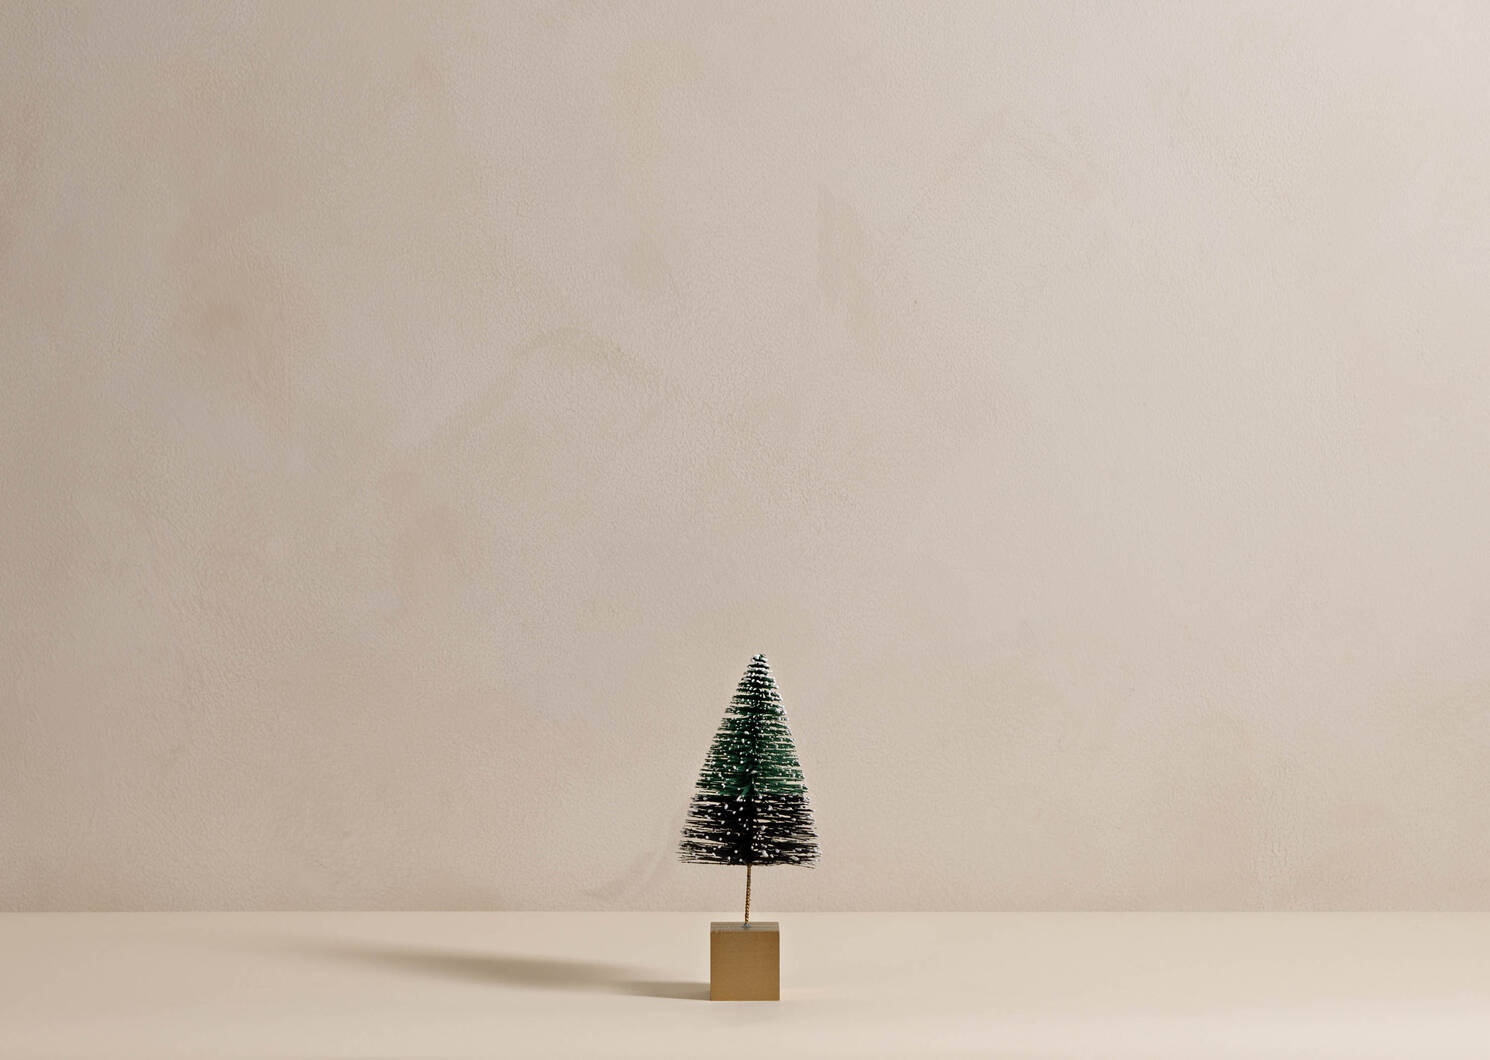 Byrne Bristle Christmas Trees